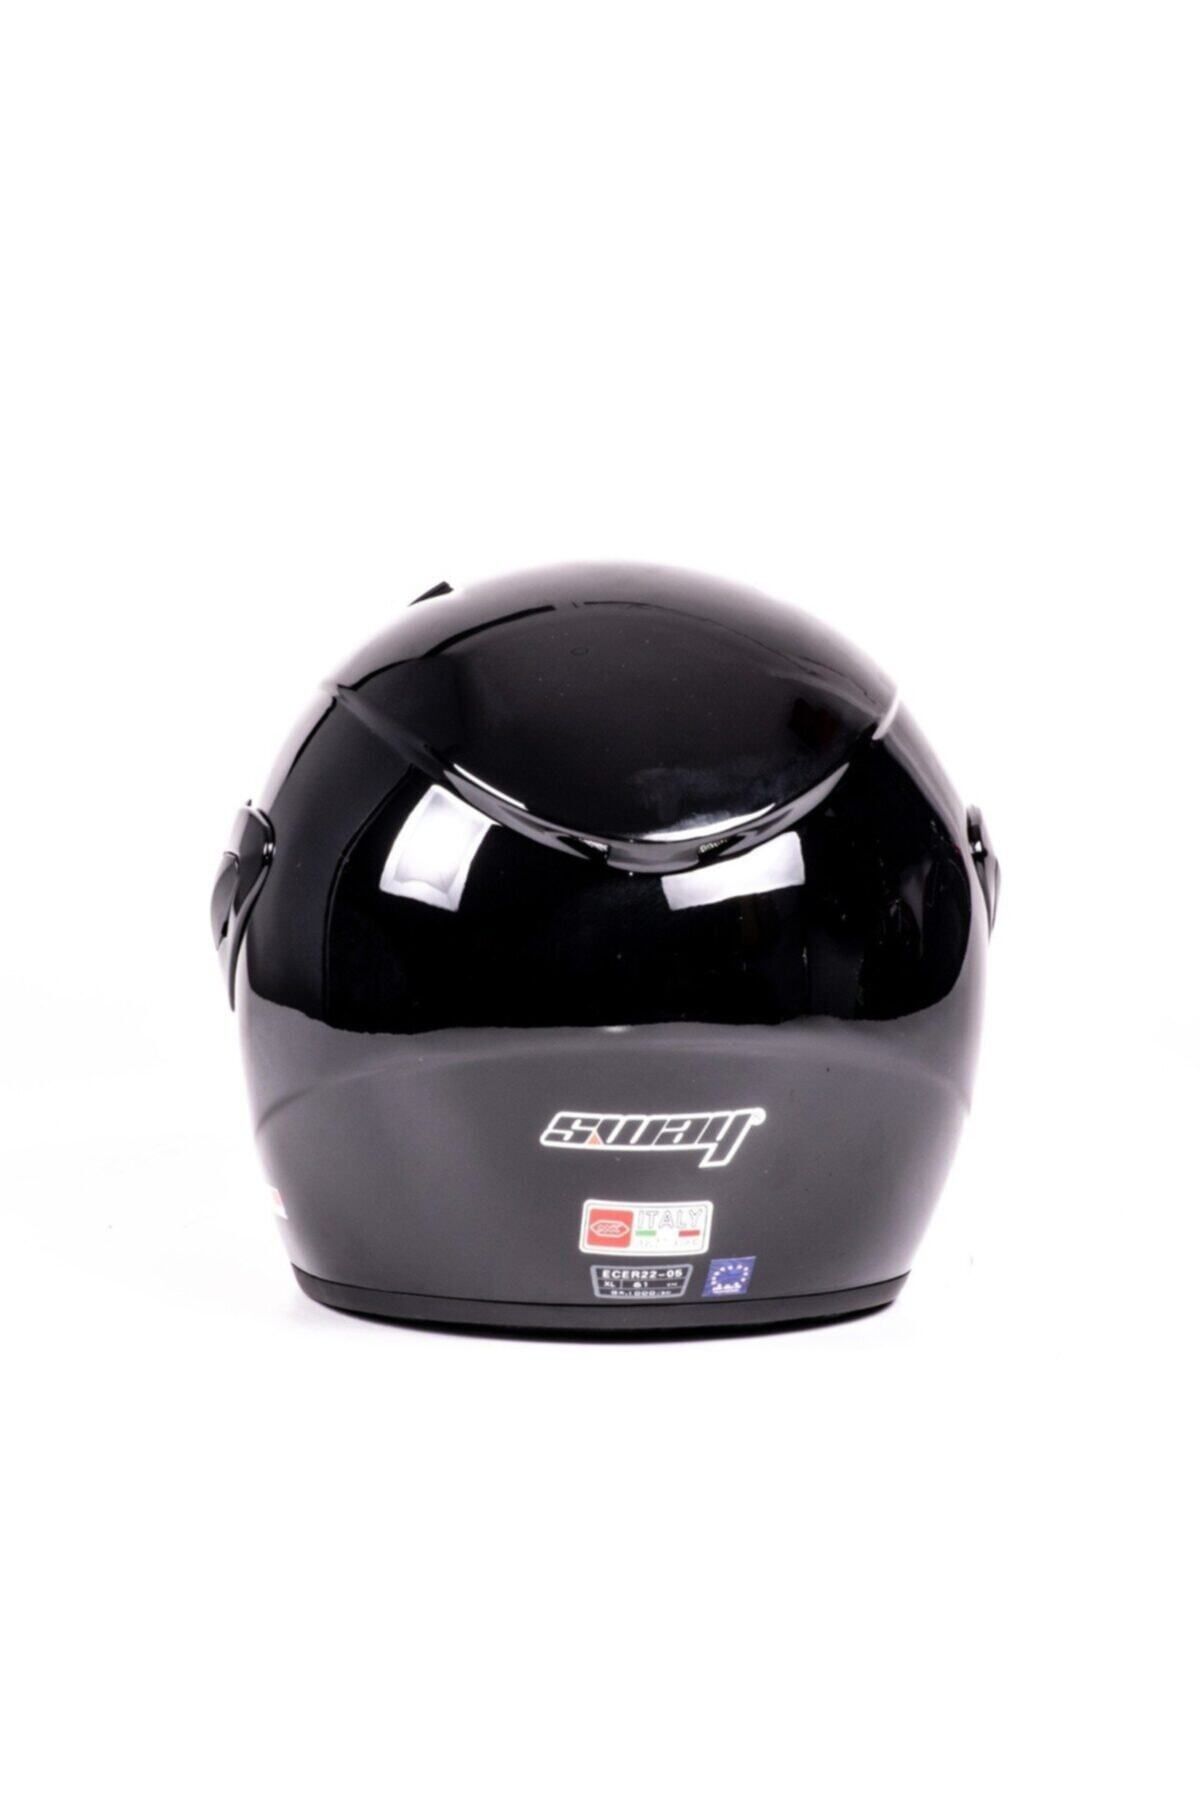 Helmet Sway 700 Yarı Camlı Kask Siyah Ce Güvenlik Sertifikalı